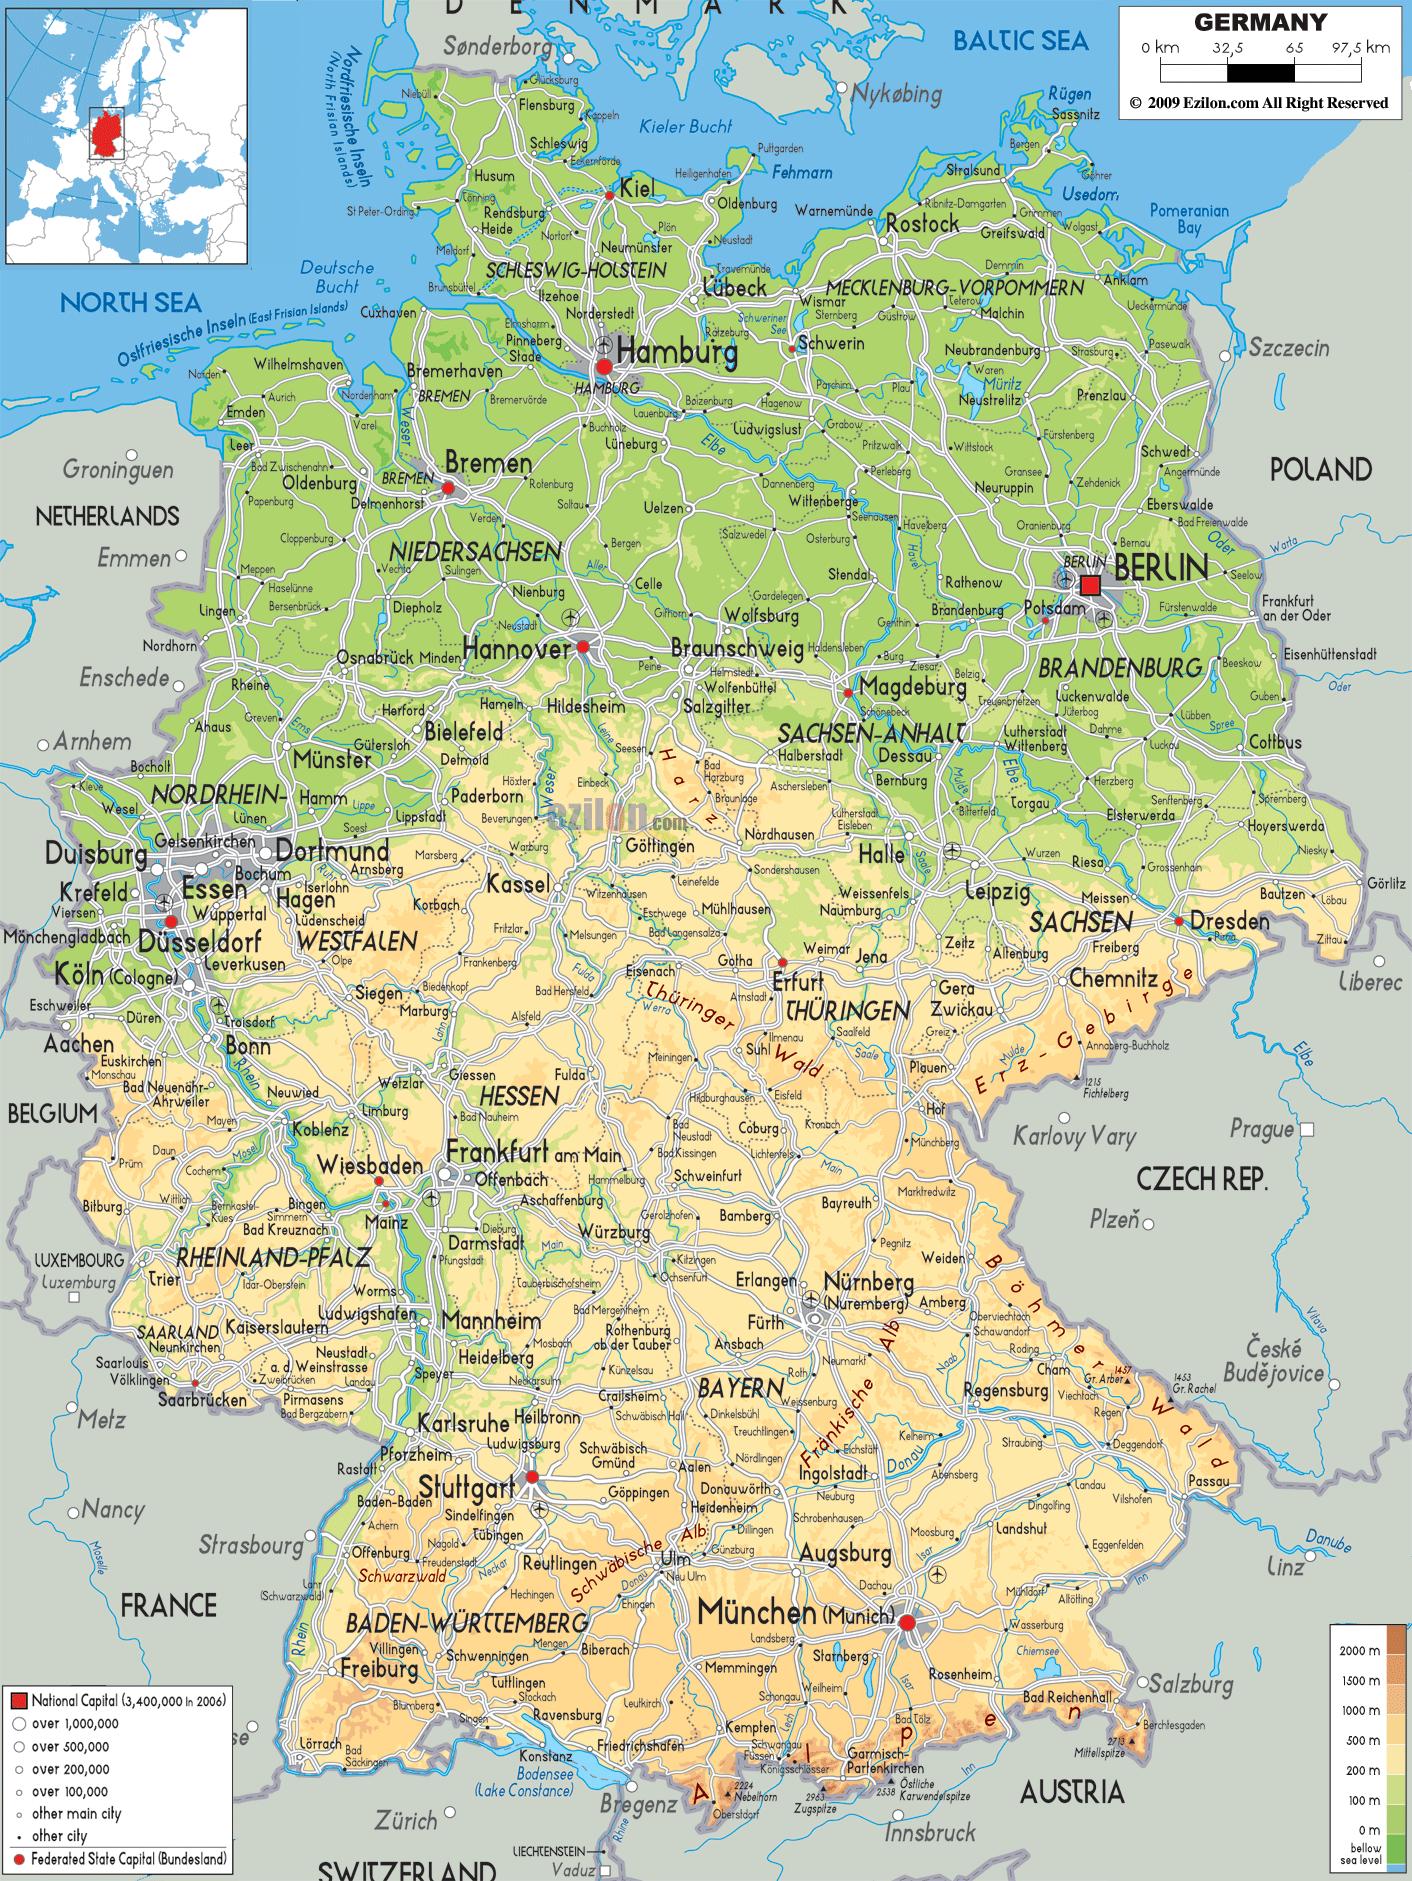 michelin kort tyskland Michelin Maps Germany Germany Highway Map Western Europe Europe michelin kort tyskland